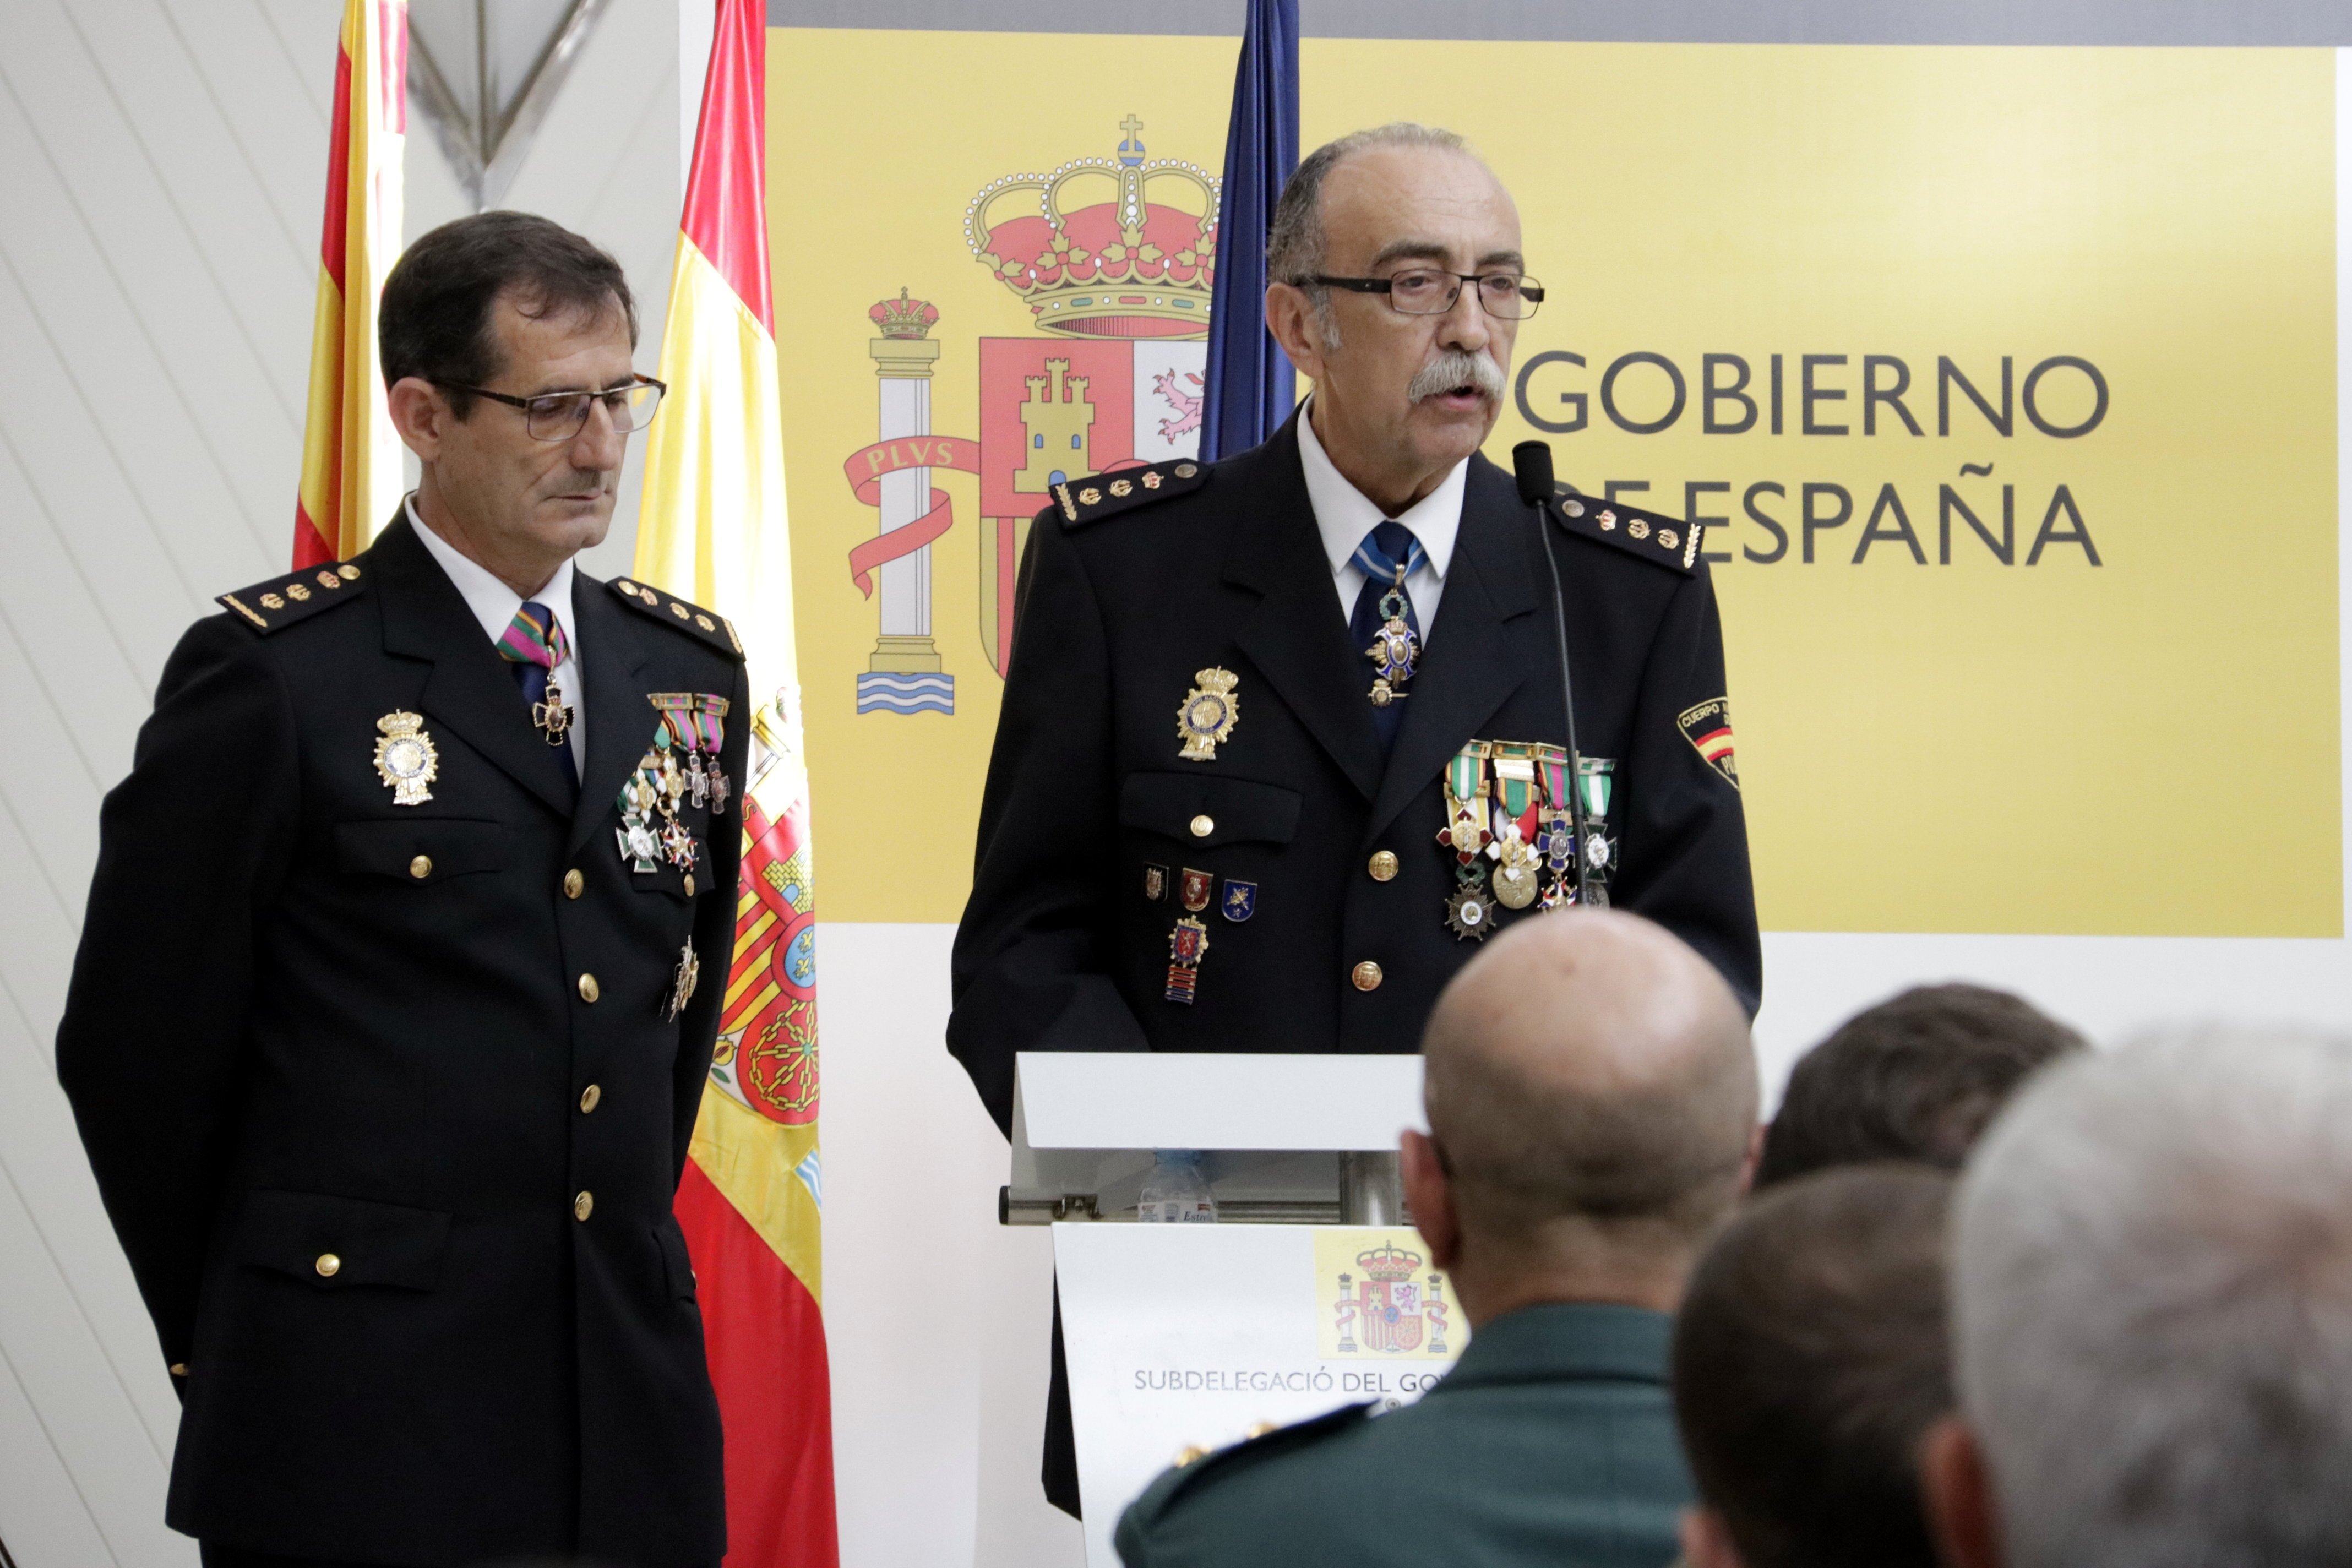 El jefe de la policía española en Girona asegura que estarán "siempre aquí"